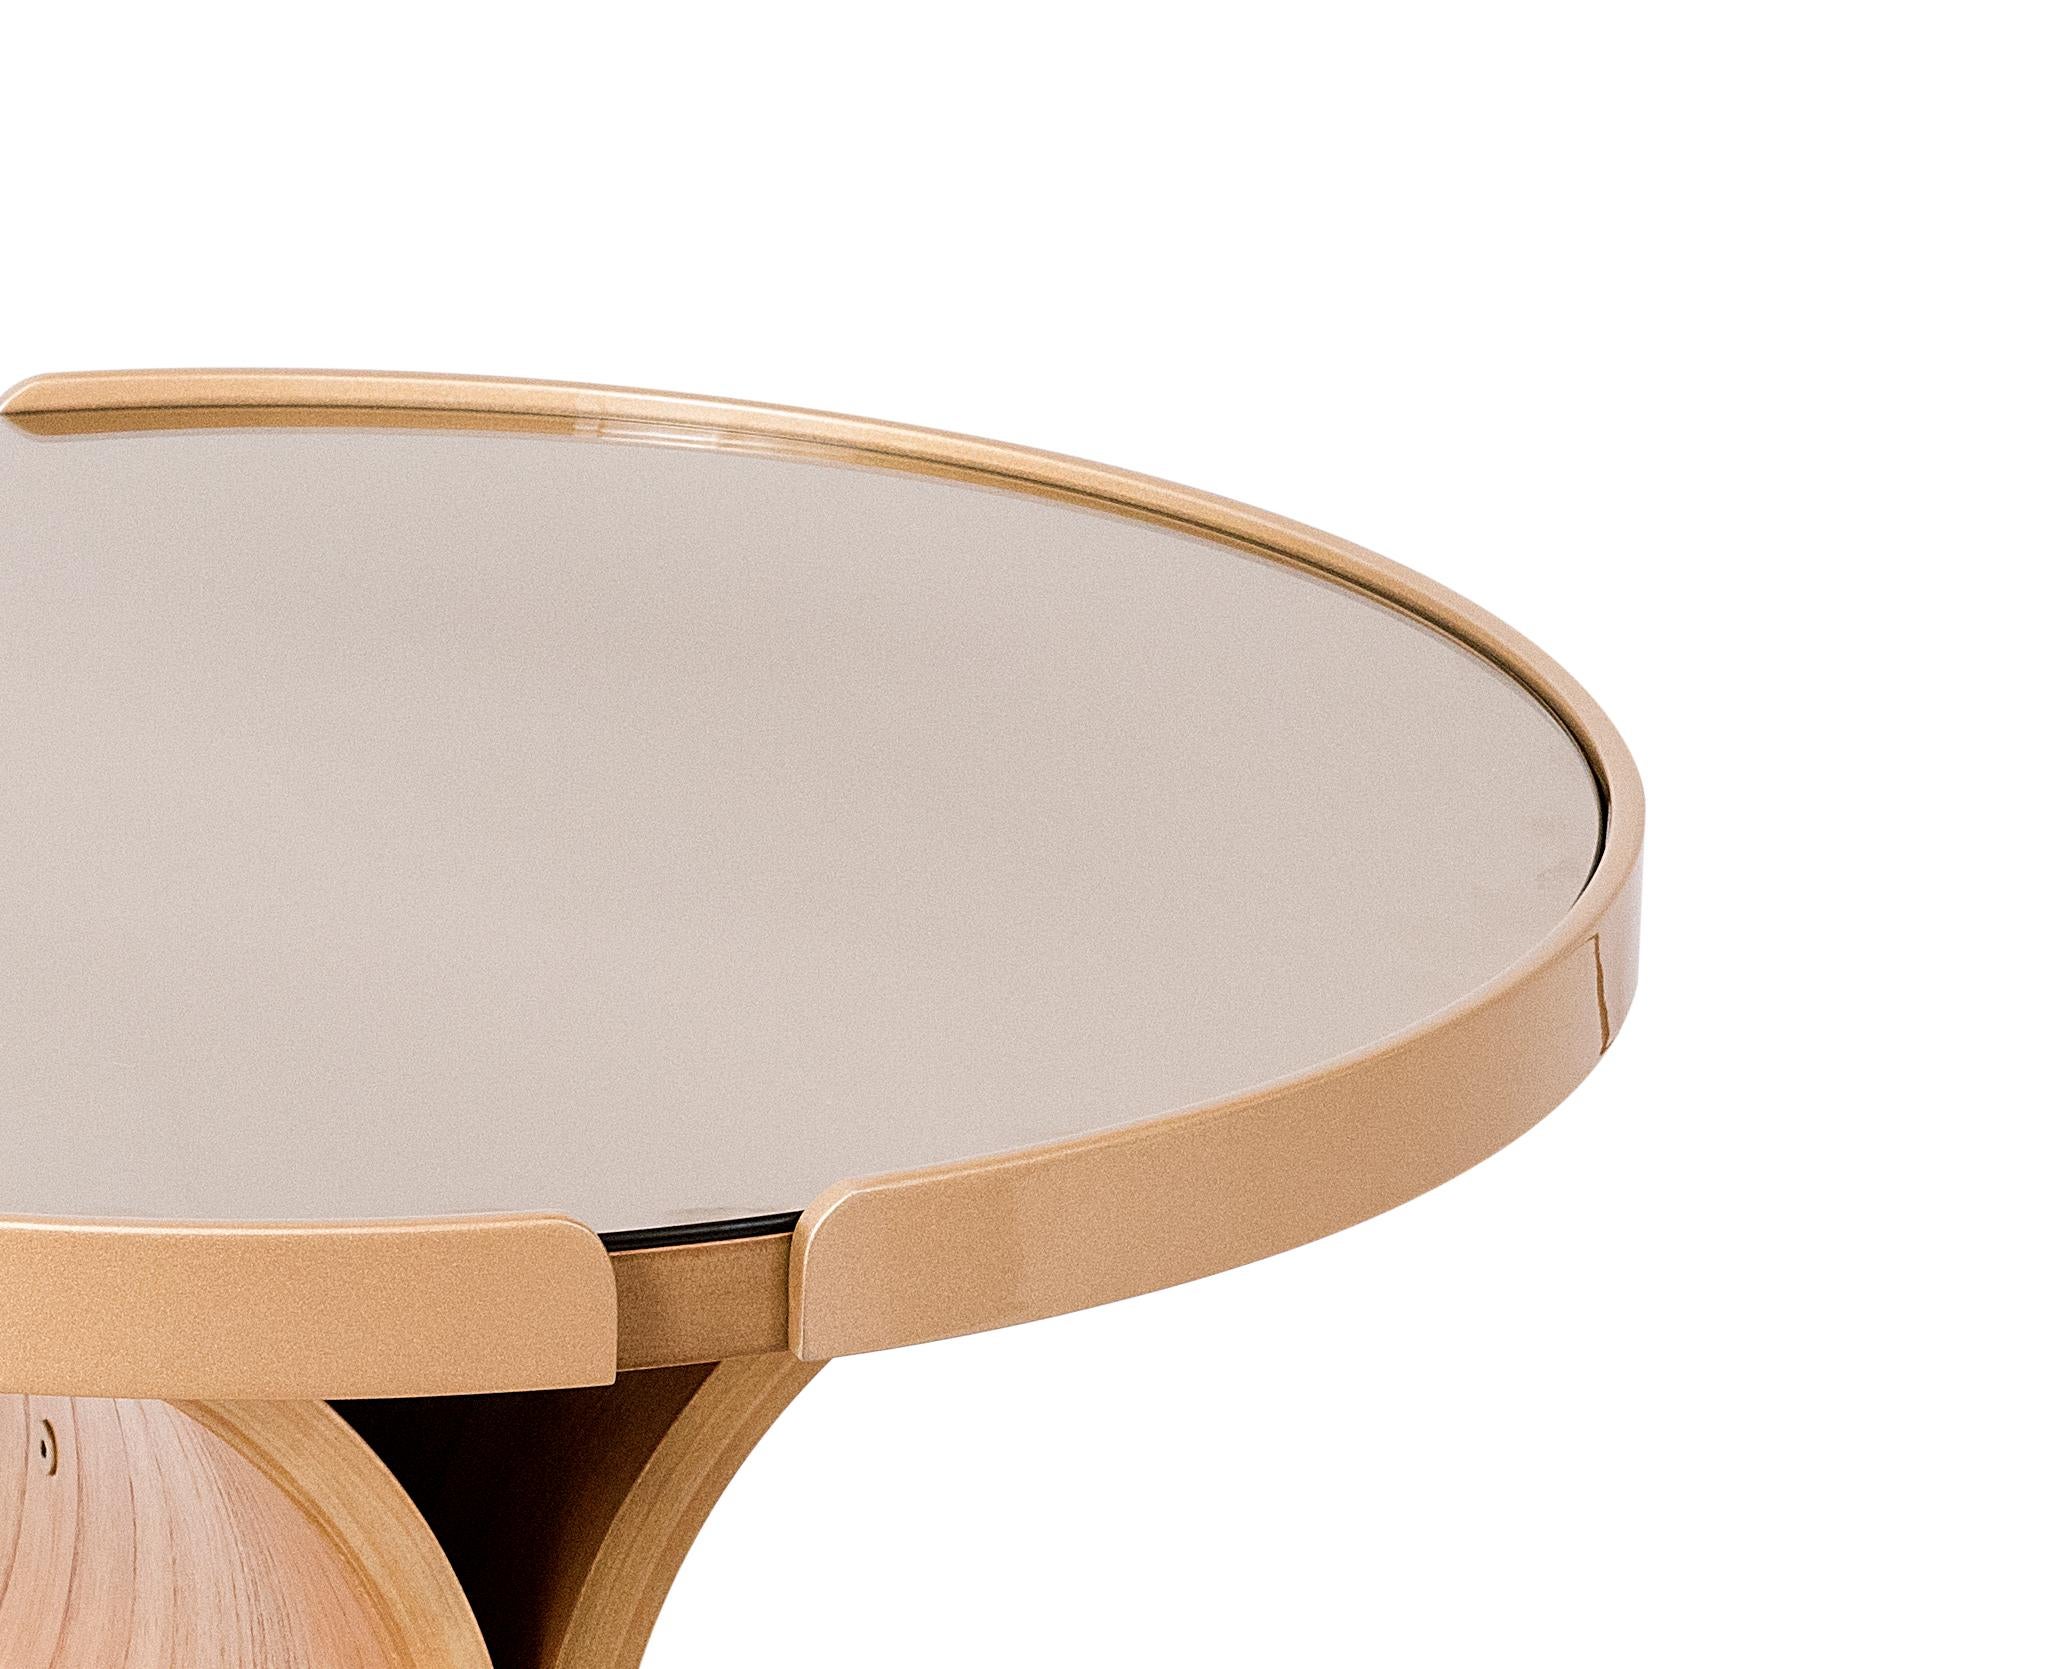 La table centrale Nature est dotée d'un piètement en multiplis de bois naturel cinnamon incurvé. (20mm d'épaisseur)
Le plateau est en MDF avec un revêtement en bois stratifié, et il y a un miroir de couleur bronze. Sur les bords supérieurs se